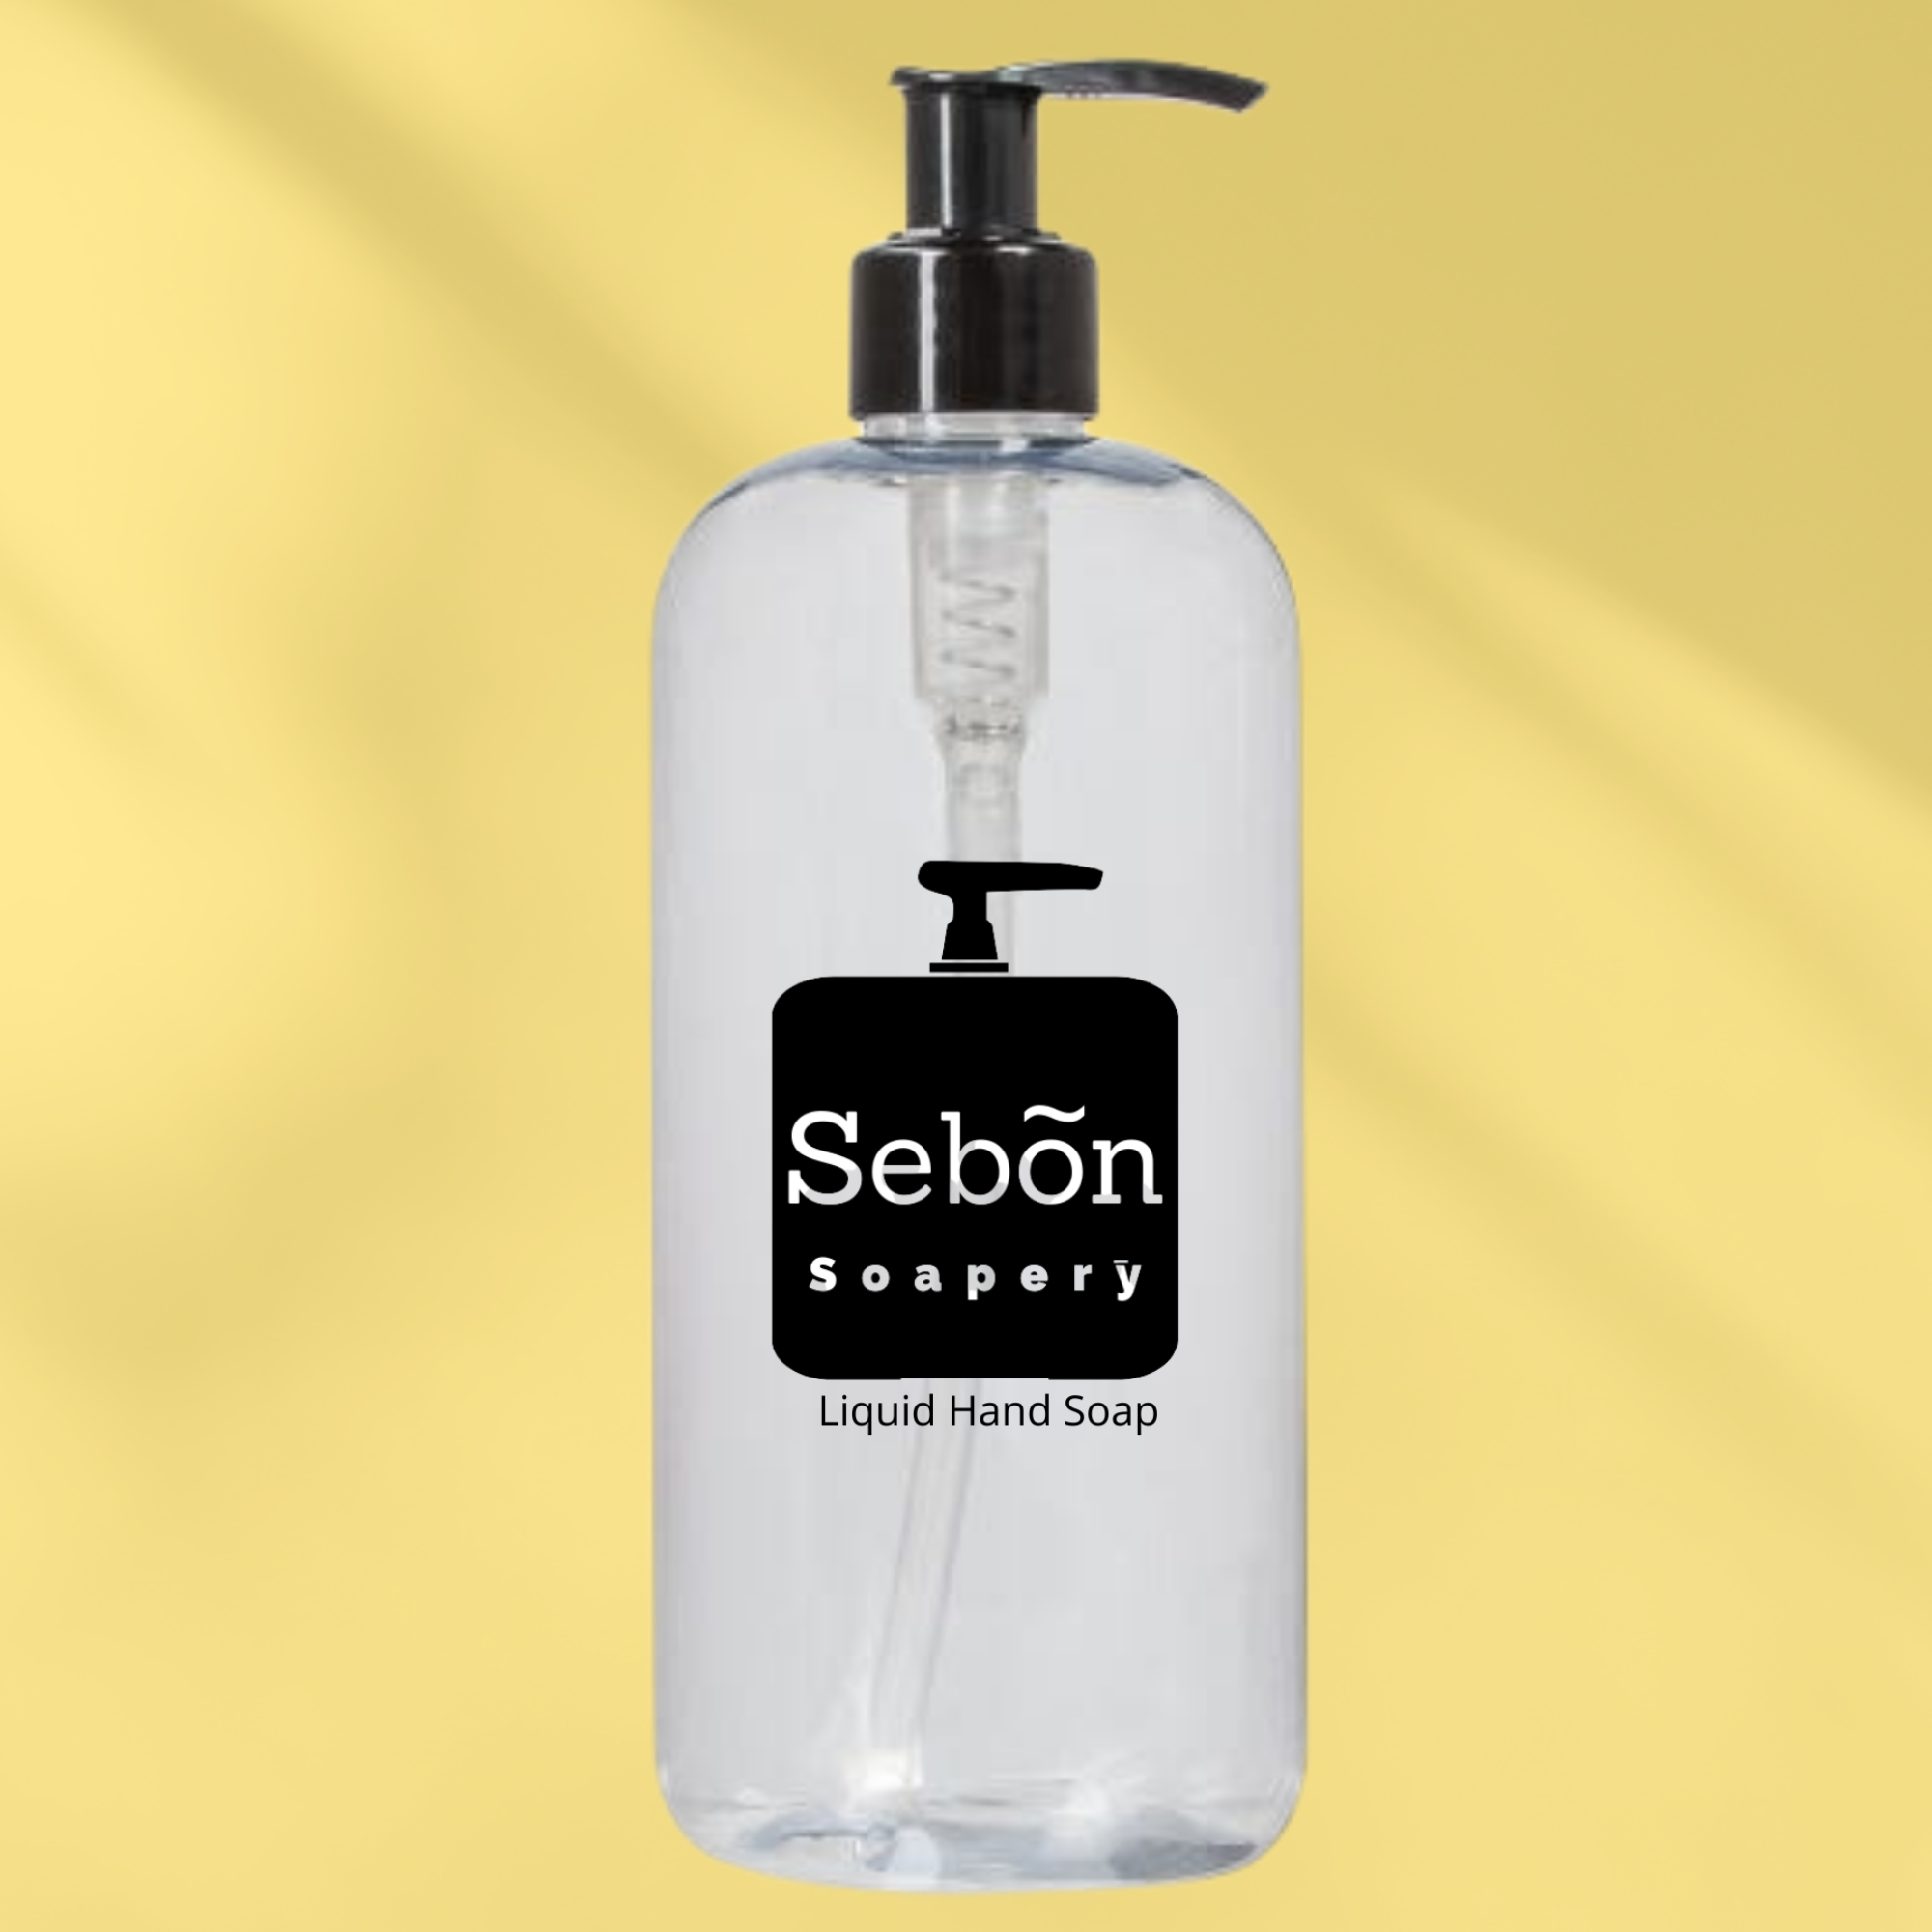 Sebon Apple Blossom & Vanilla Scented Liquid Hand Soap with Olive Oil